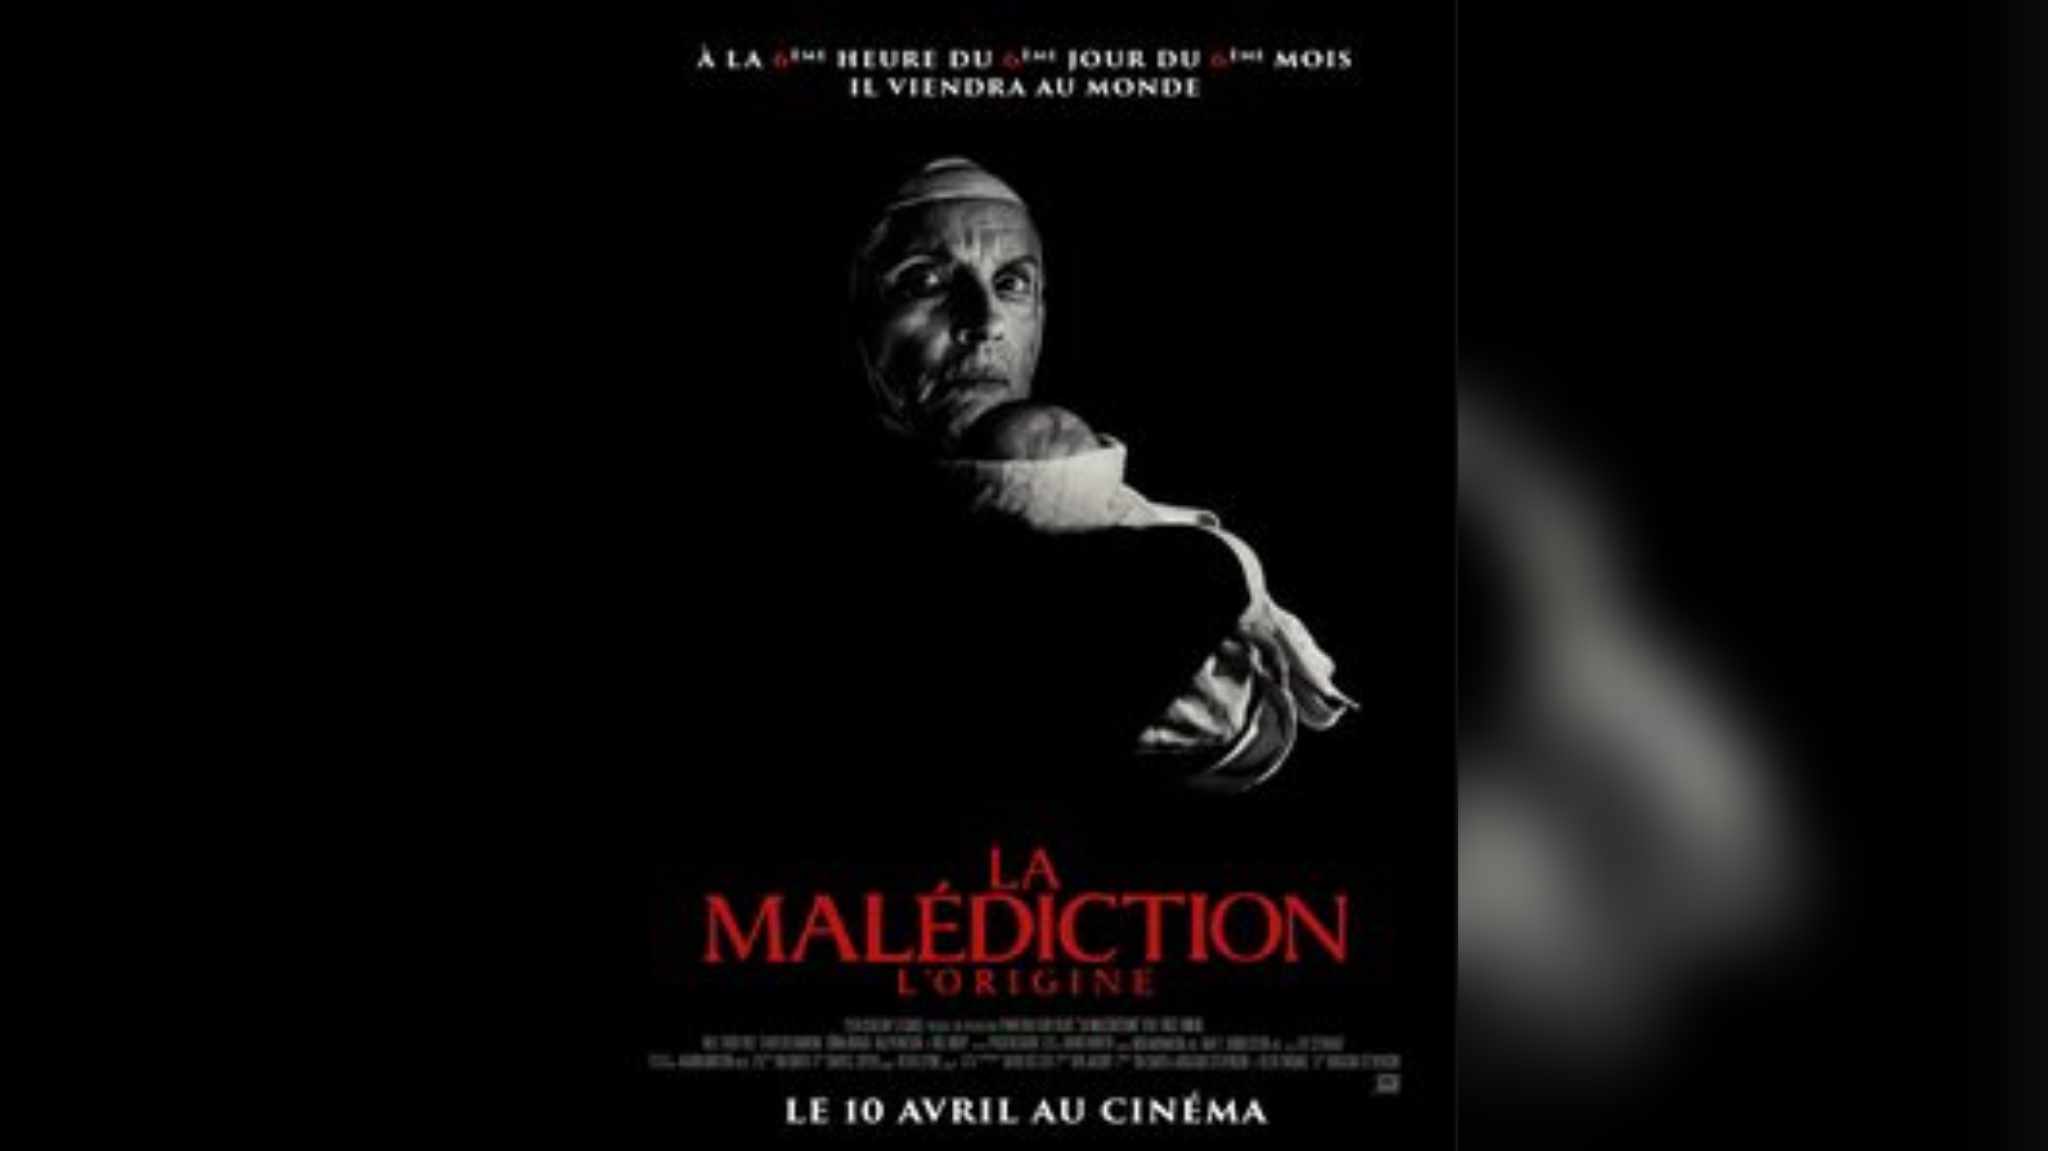 فيلم الرعب العالمي La Malédiction يكتسح قاعات السينما التونسية 